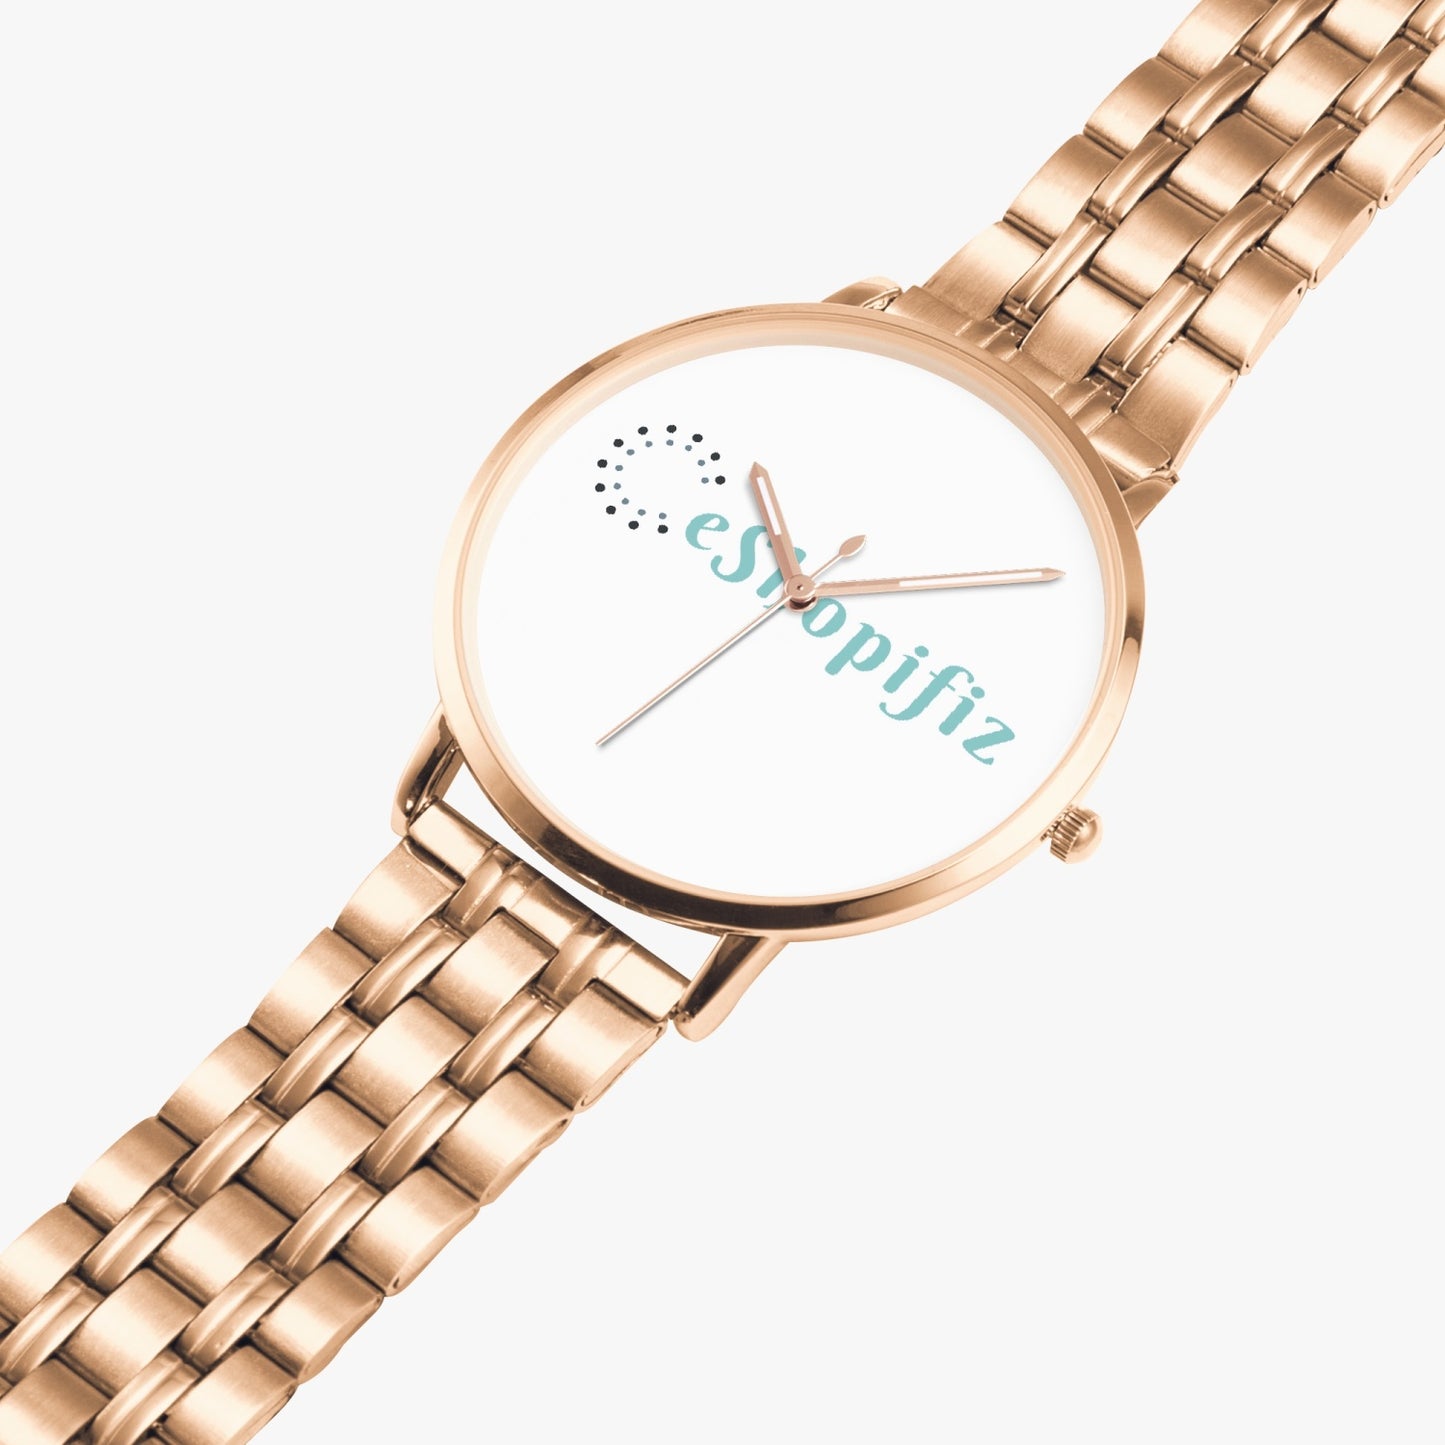 Exclusive to eShopifiz - Plain face Quartz watch